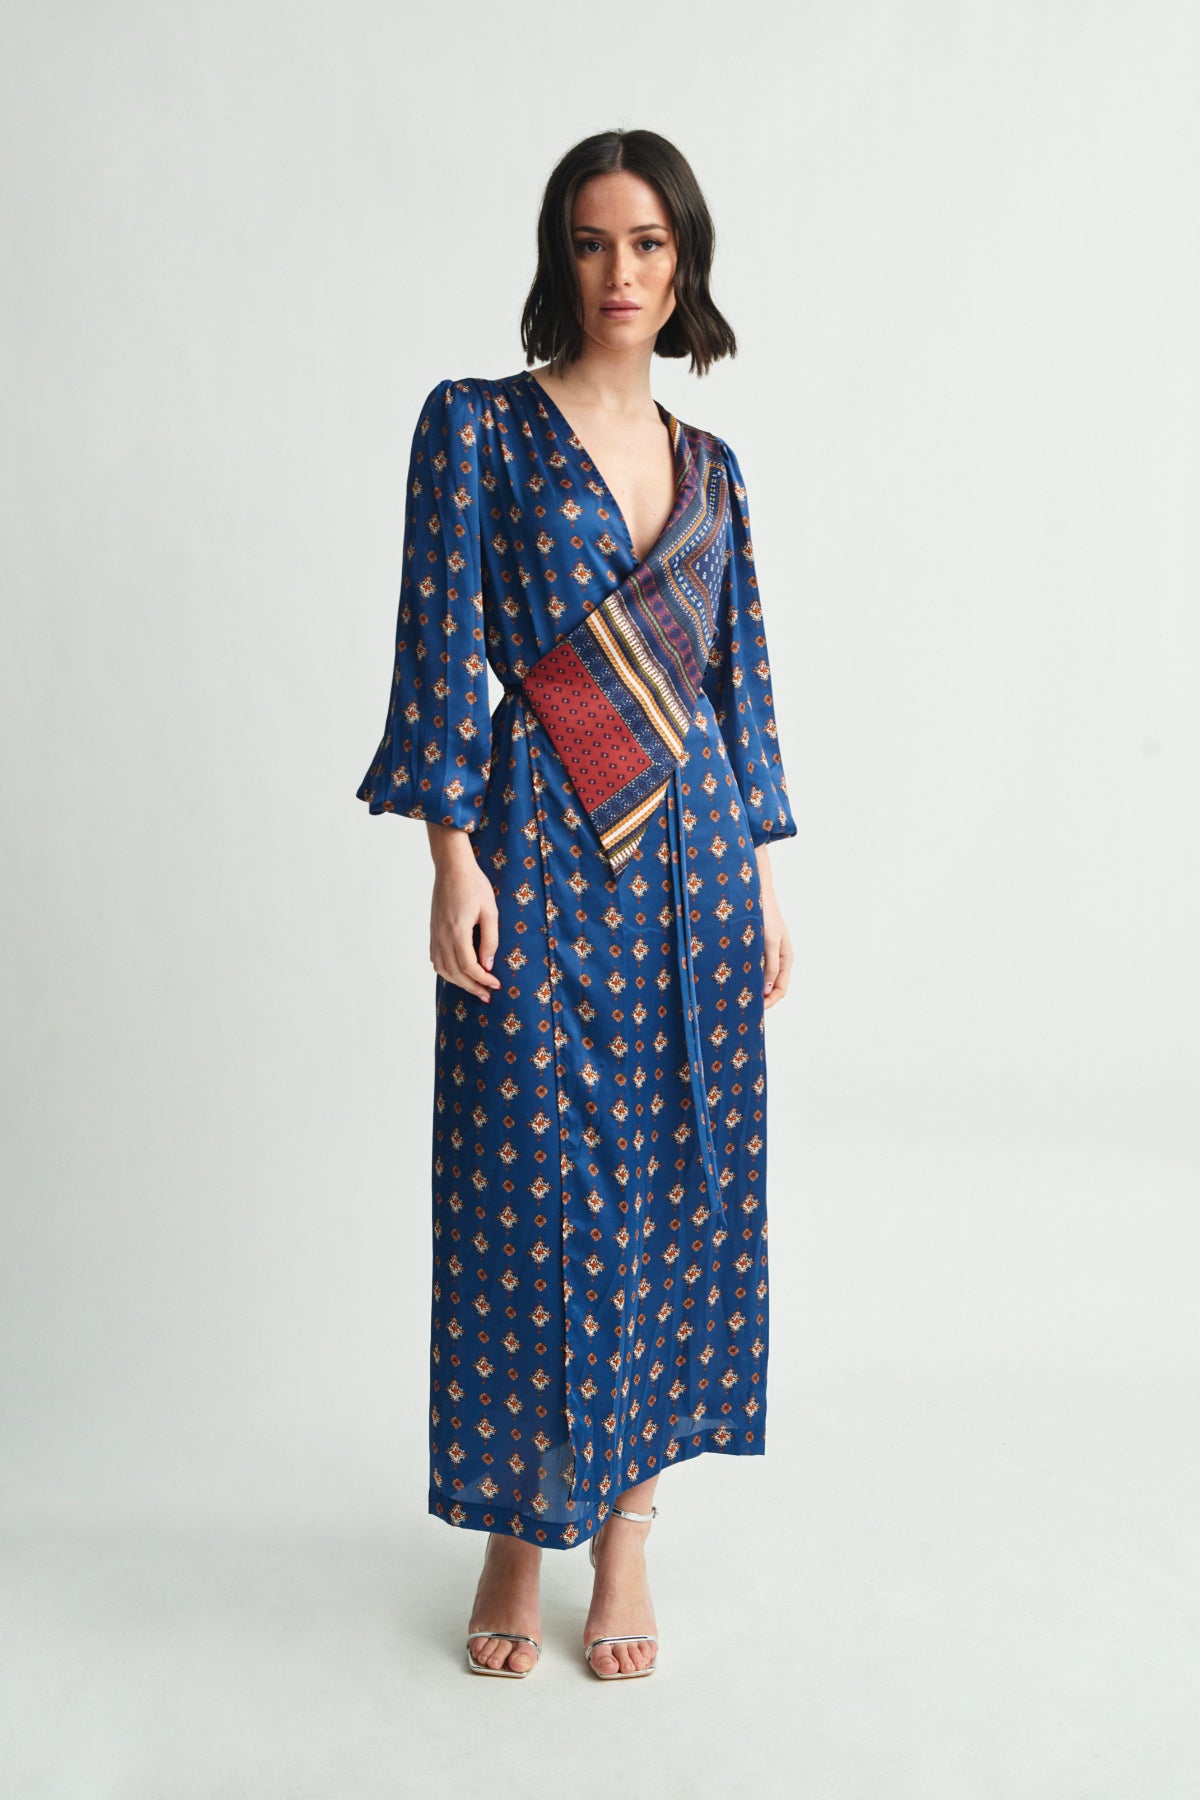 Begué kimono dress